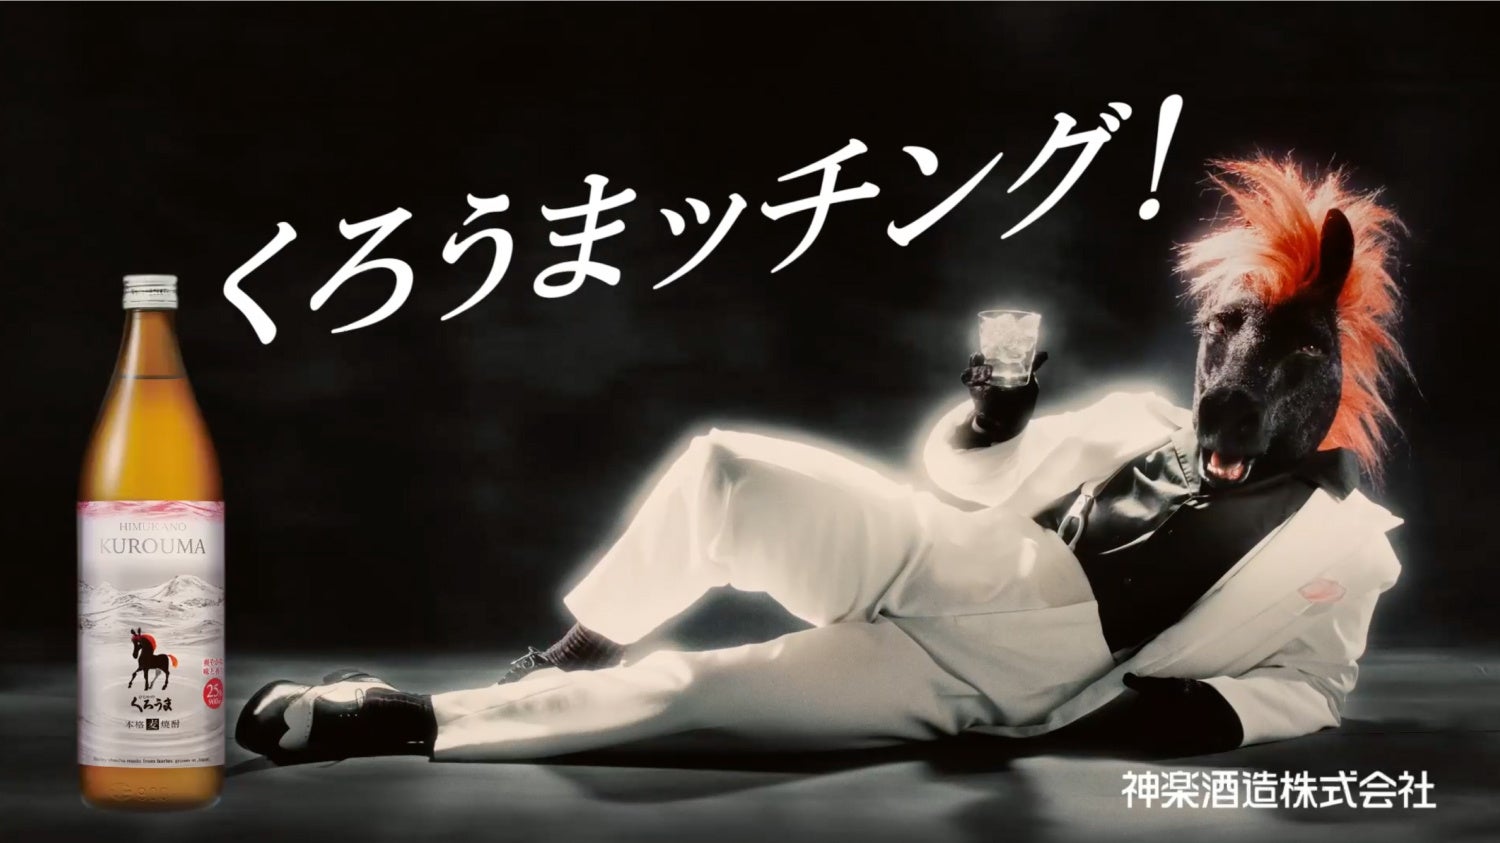 本格麦焼酎「ひむかのくろうま」37年ぶりとなる新パッケージ発売　「塩が合うなら、うまが合う。」をコンセプトに謎の生命体MCウマーがコミカルなダンスを披露する新CMが西日本エリアで放映開始のサブ画像1